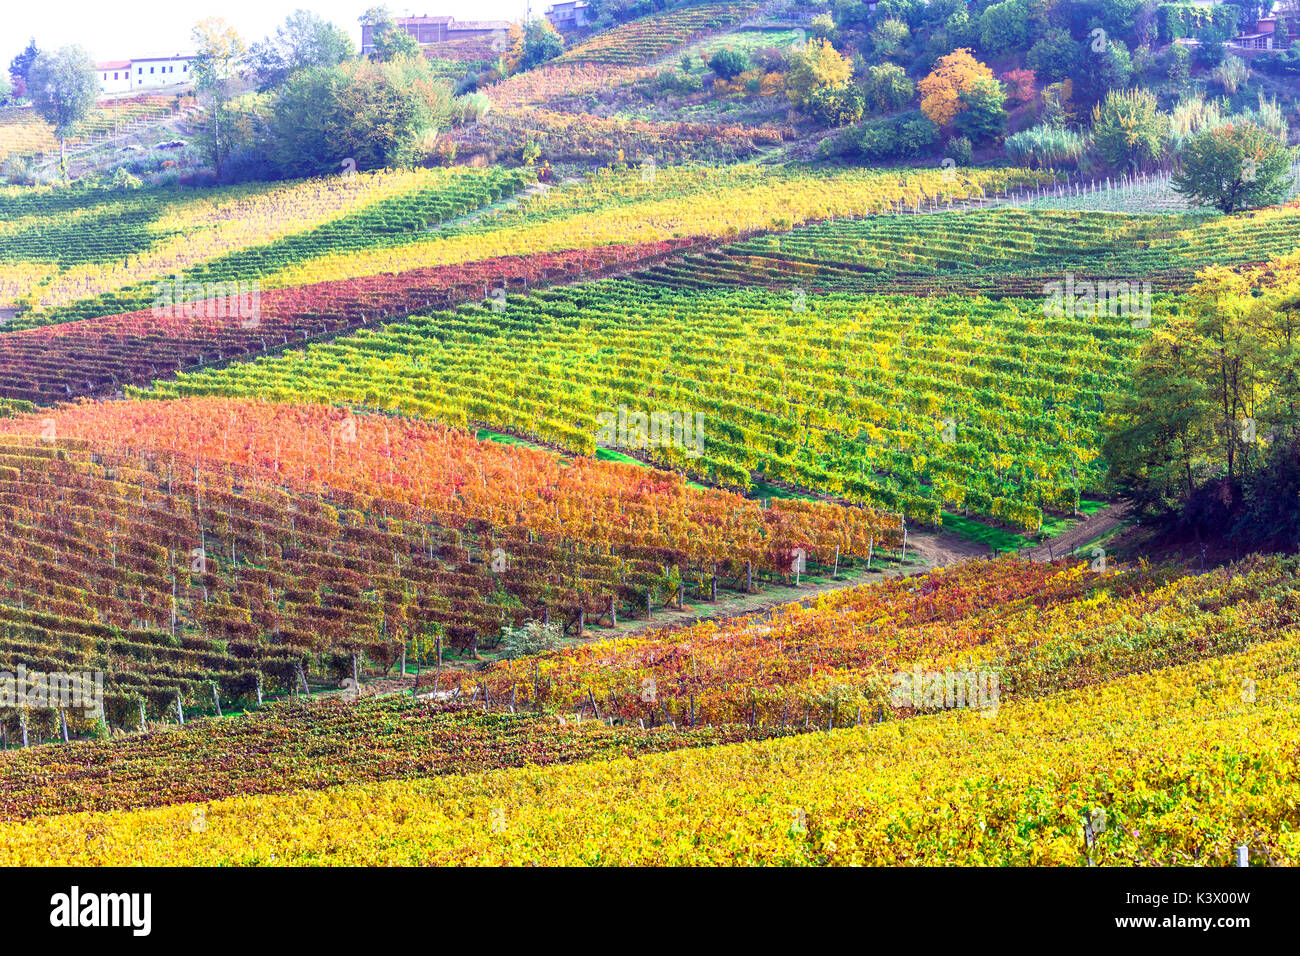 Incredibile collezione autunno variopinti vigneti del Piemonte - regione di vite di Italia Foto Stock